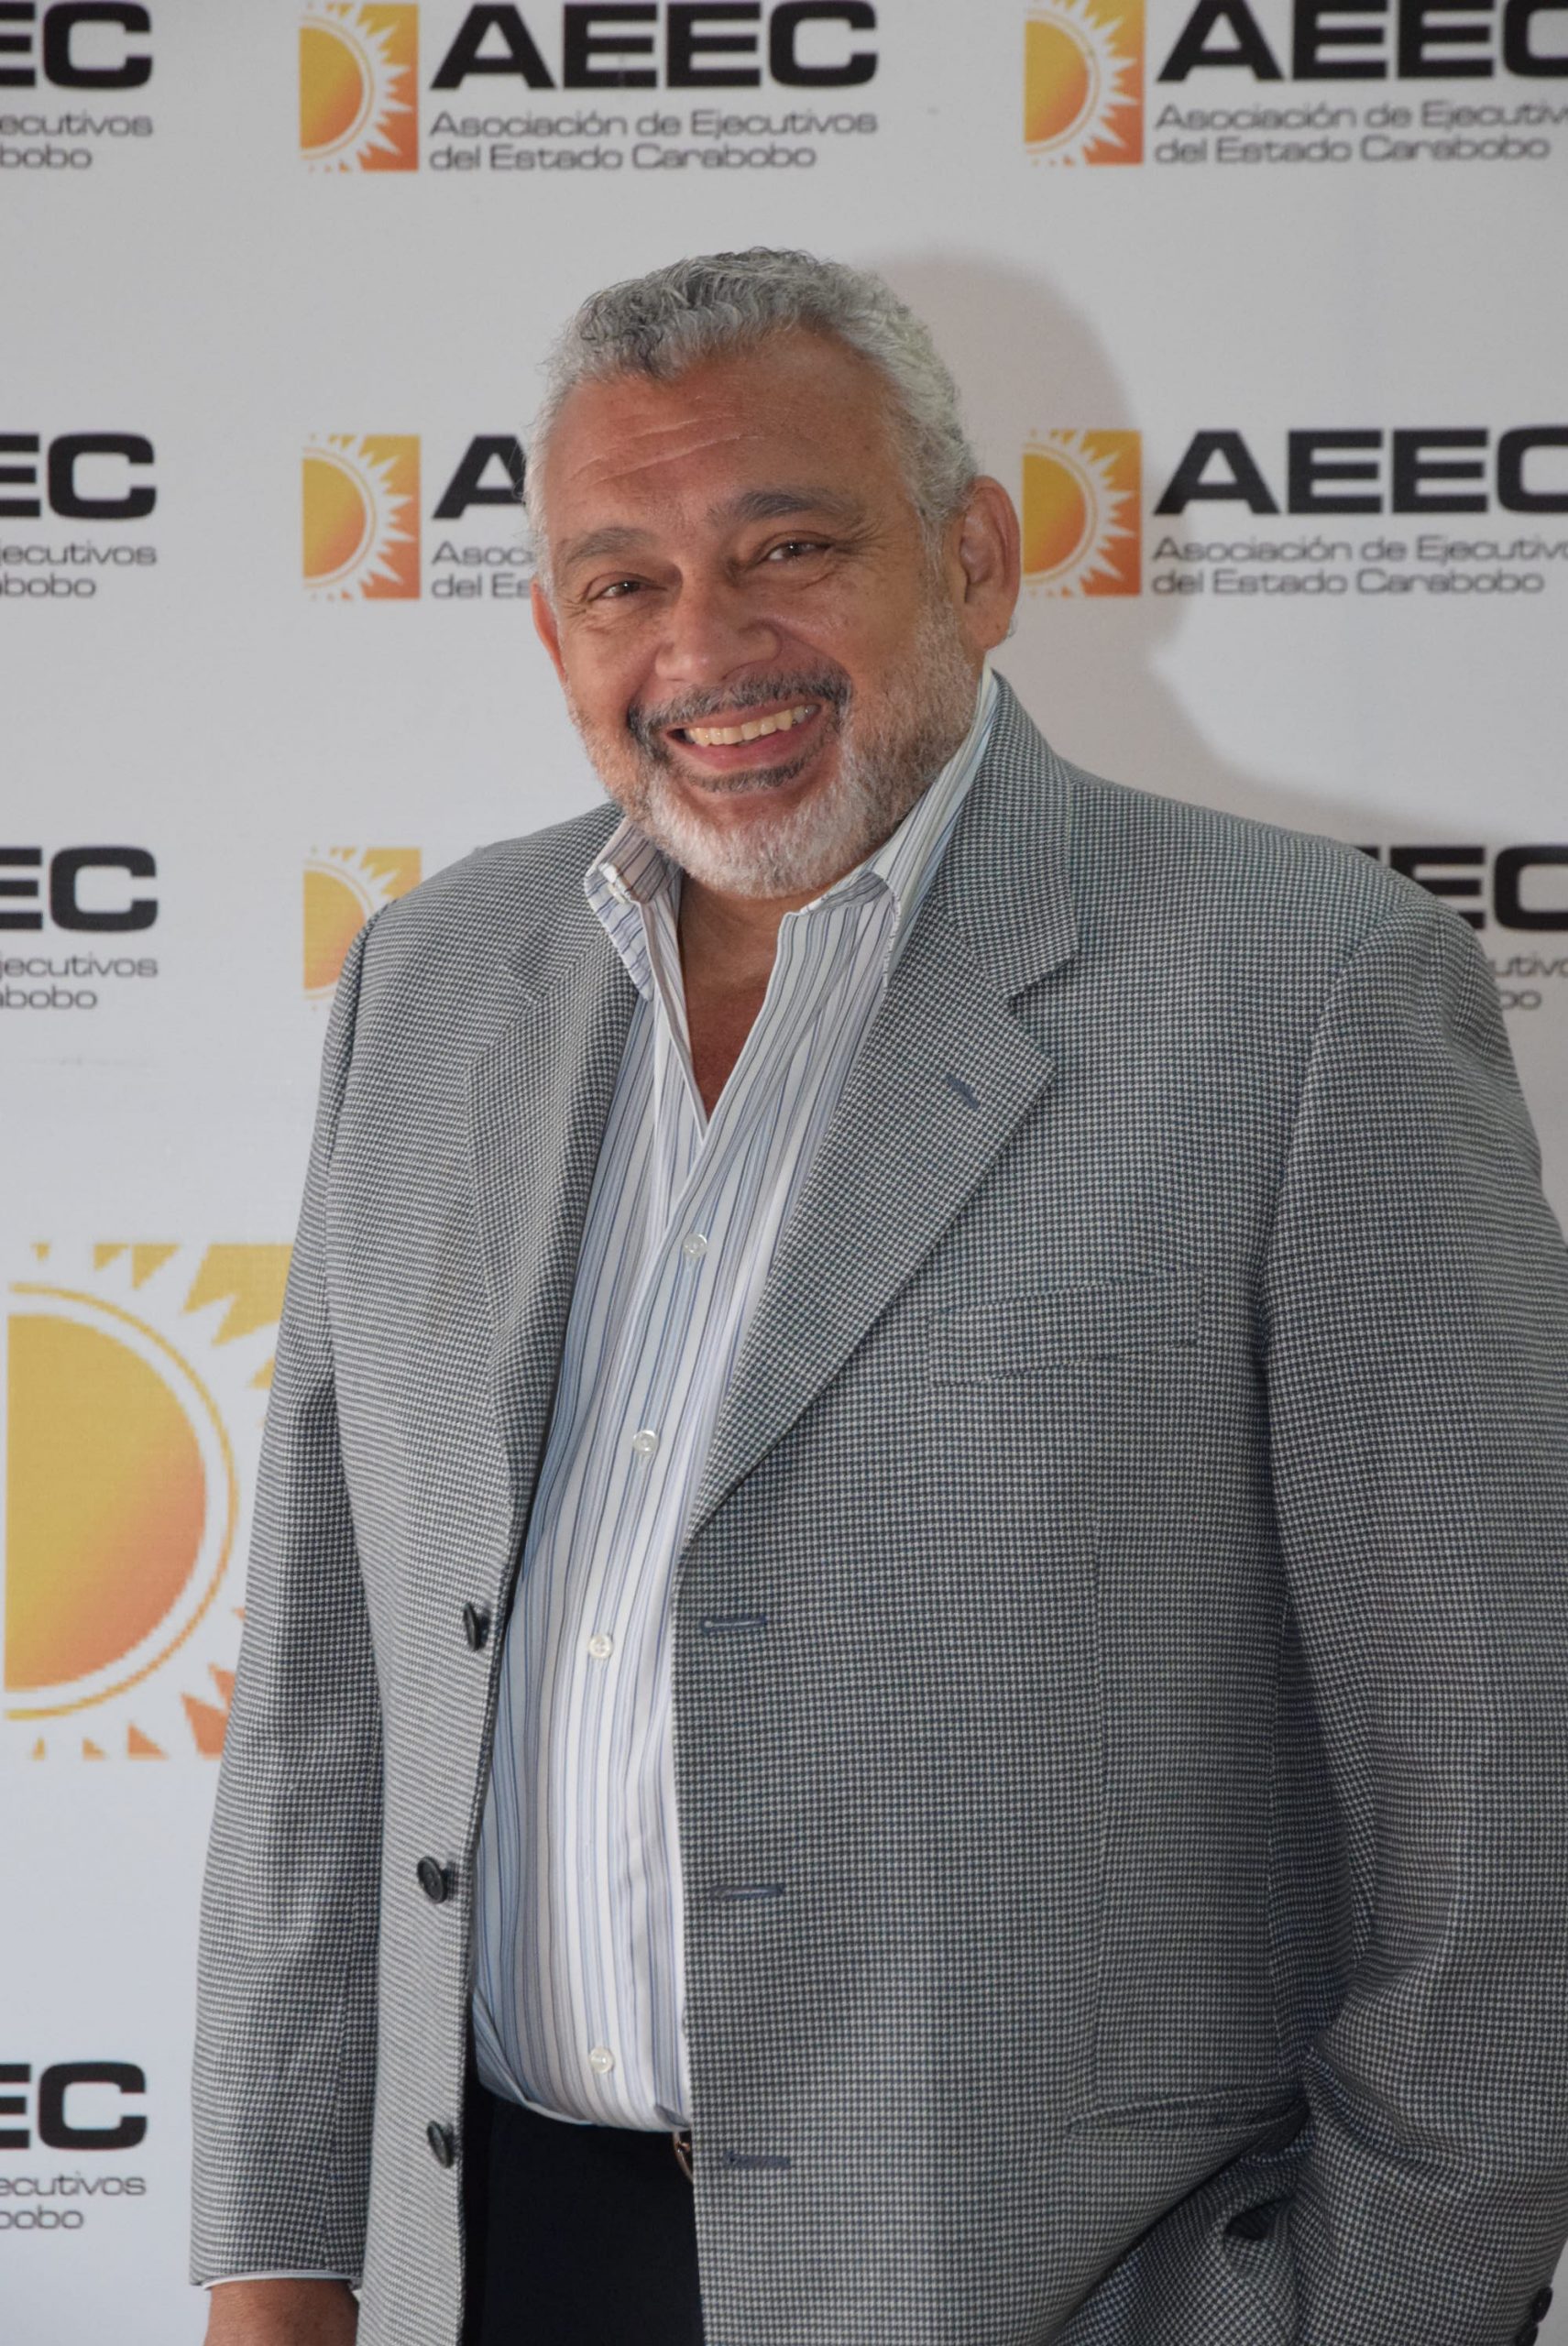 Edgar del Valle - Galería de Ex Presidentes - Asociación de Ejecutivos del Estado Carabobo